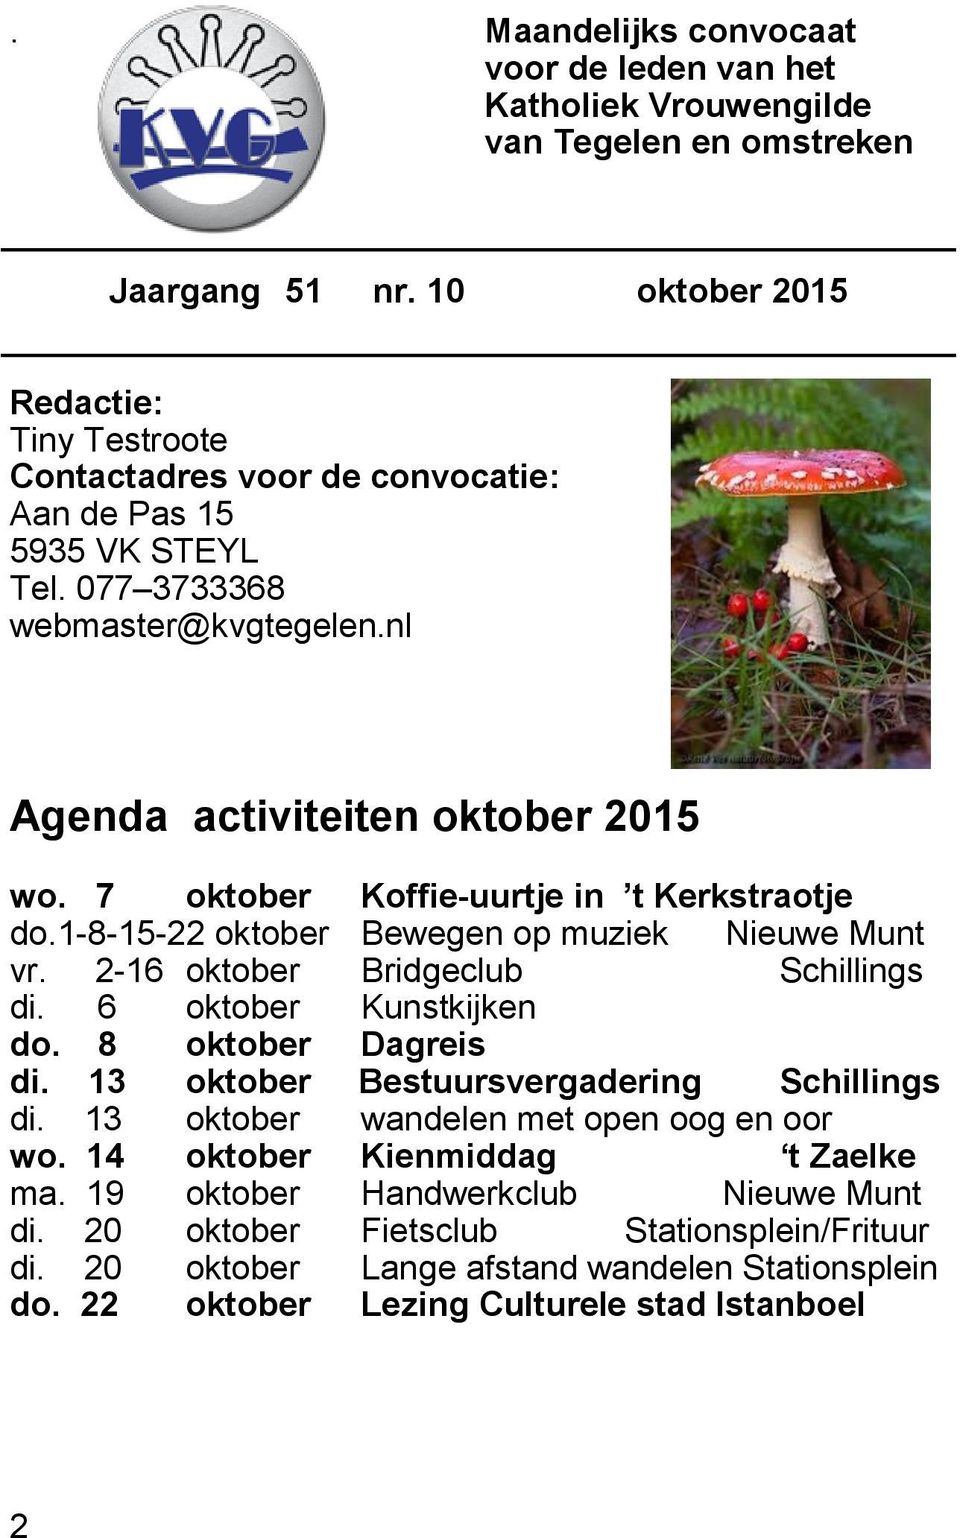 7 oktober Koffie-uurtje in t Kerkstraotje do.1-8-15-22 oktober Bewegen op muziek Nieuwe Munt vr. 2-16 oktober Bridgeclub Schillings di. 6 oktober Kunstkijken do. 8 oktober Dagreis di.